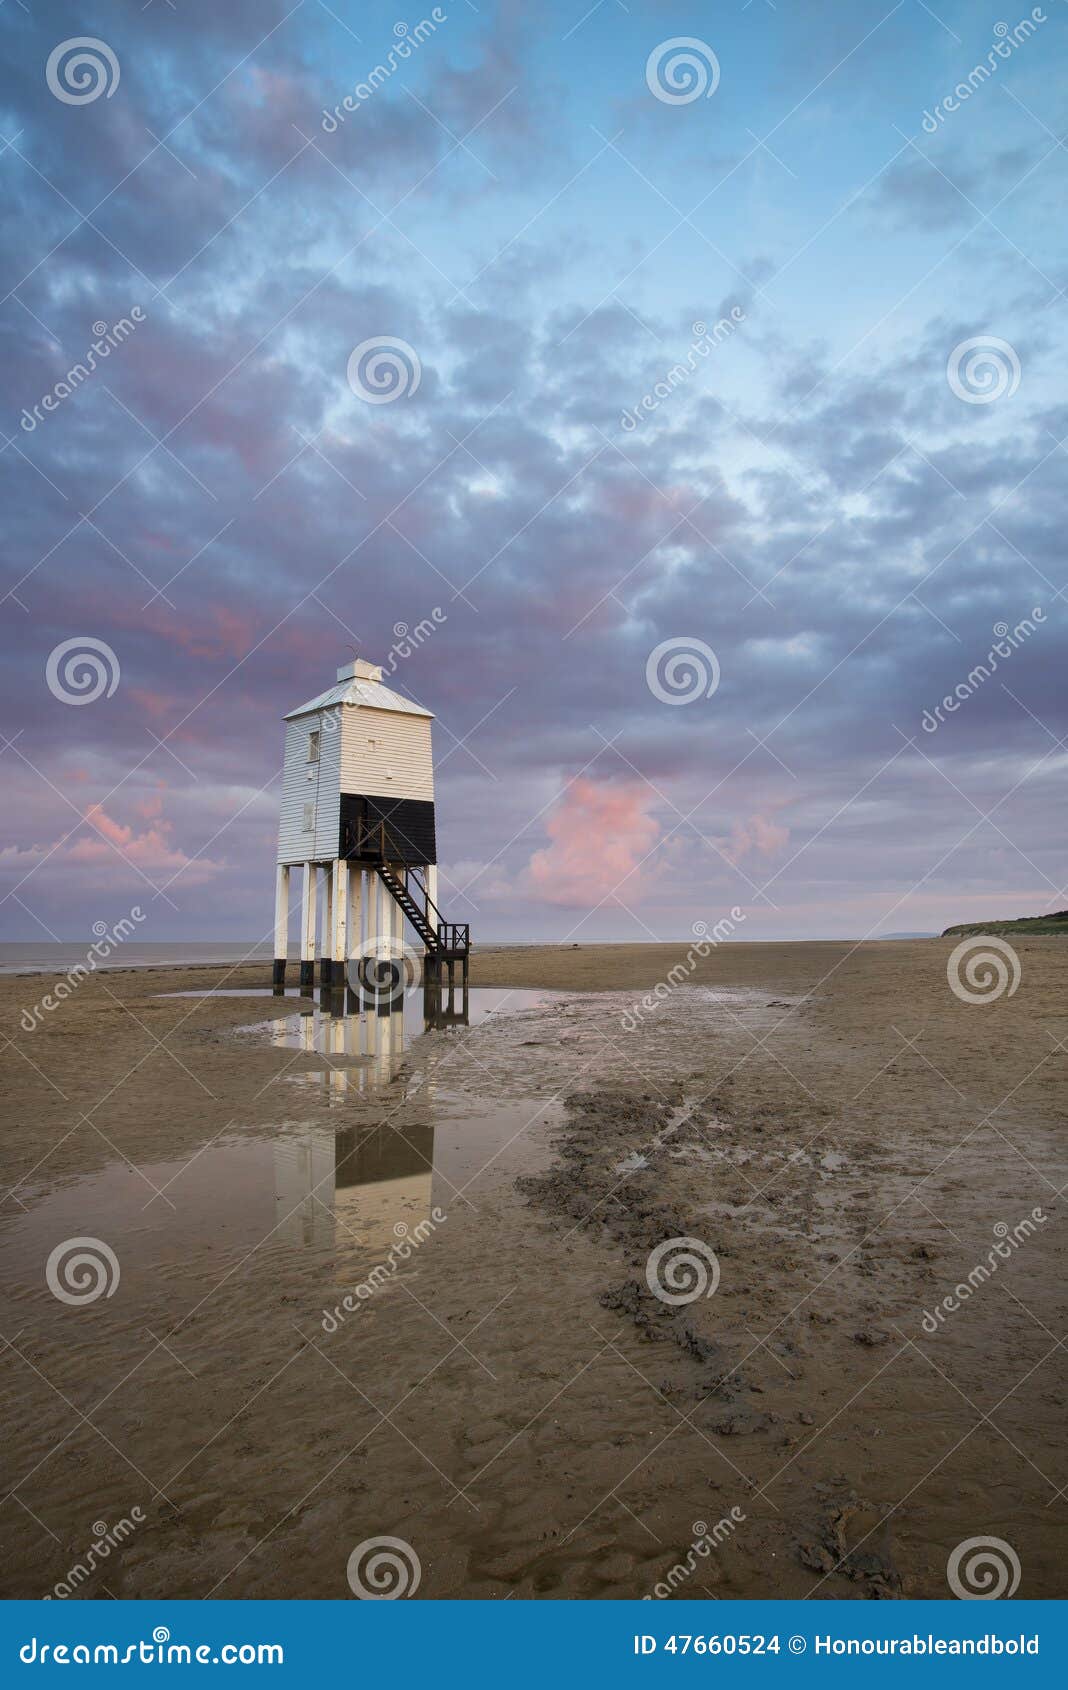 Schöner Landschaftssonnenaufgang-Stelzenleuchtturm auf Strand. Erstaunlicher Landschaftssonnenaufgang-Stelzenleuchtturm auf Strand